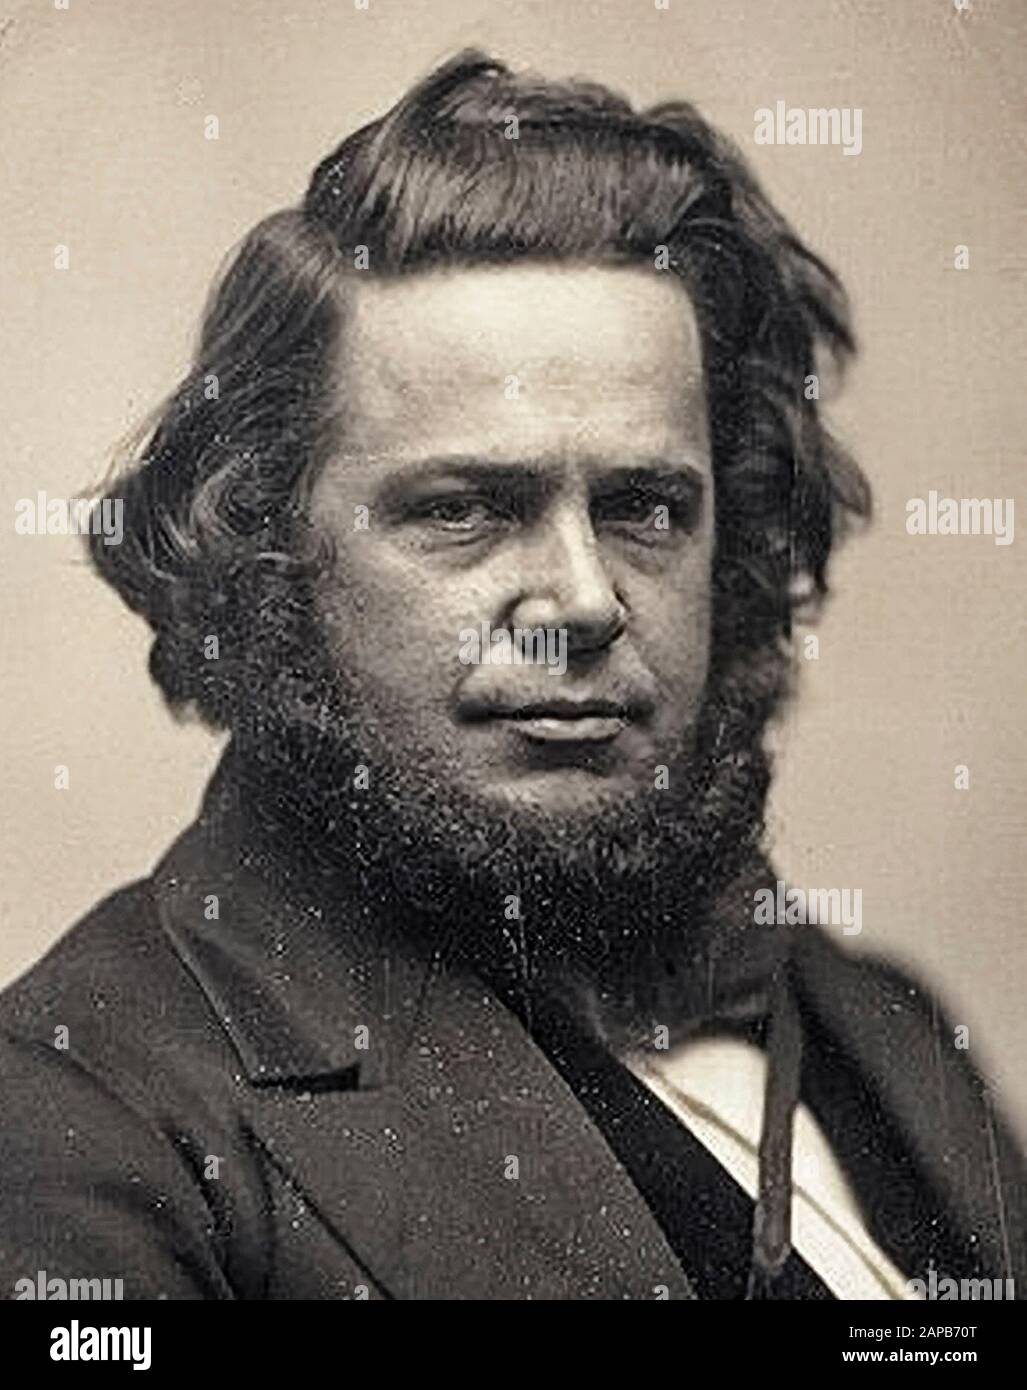 Elias Howe Jr (1819-1867), inventore della macchina da cucire a punto di maglia, ritratto di daguerreotype fotografia dettaglio, circa 1850 Foto Stock